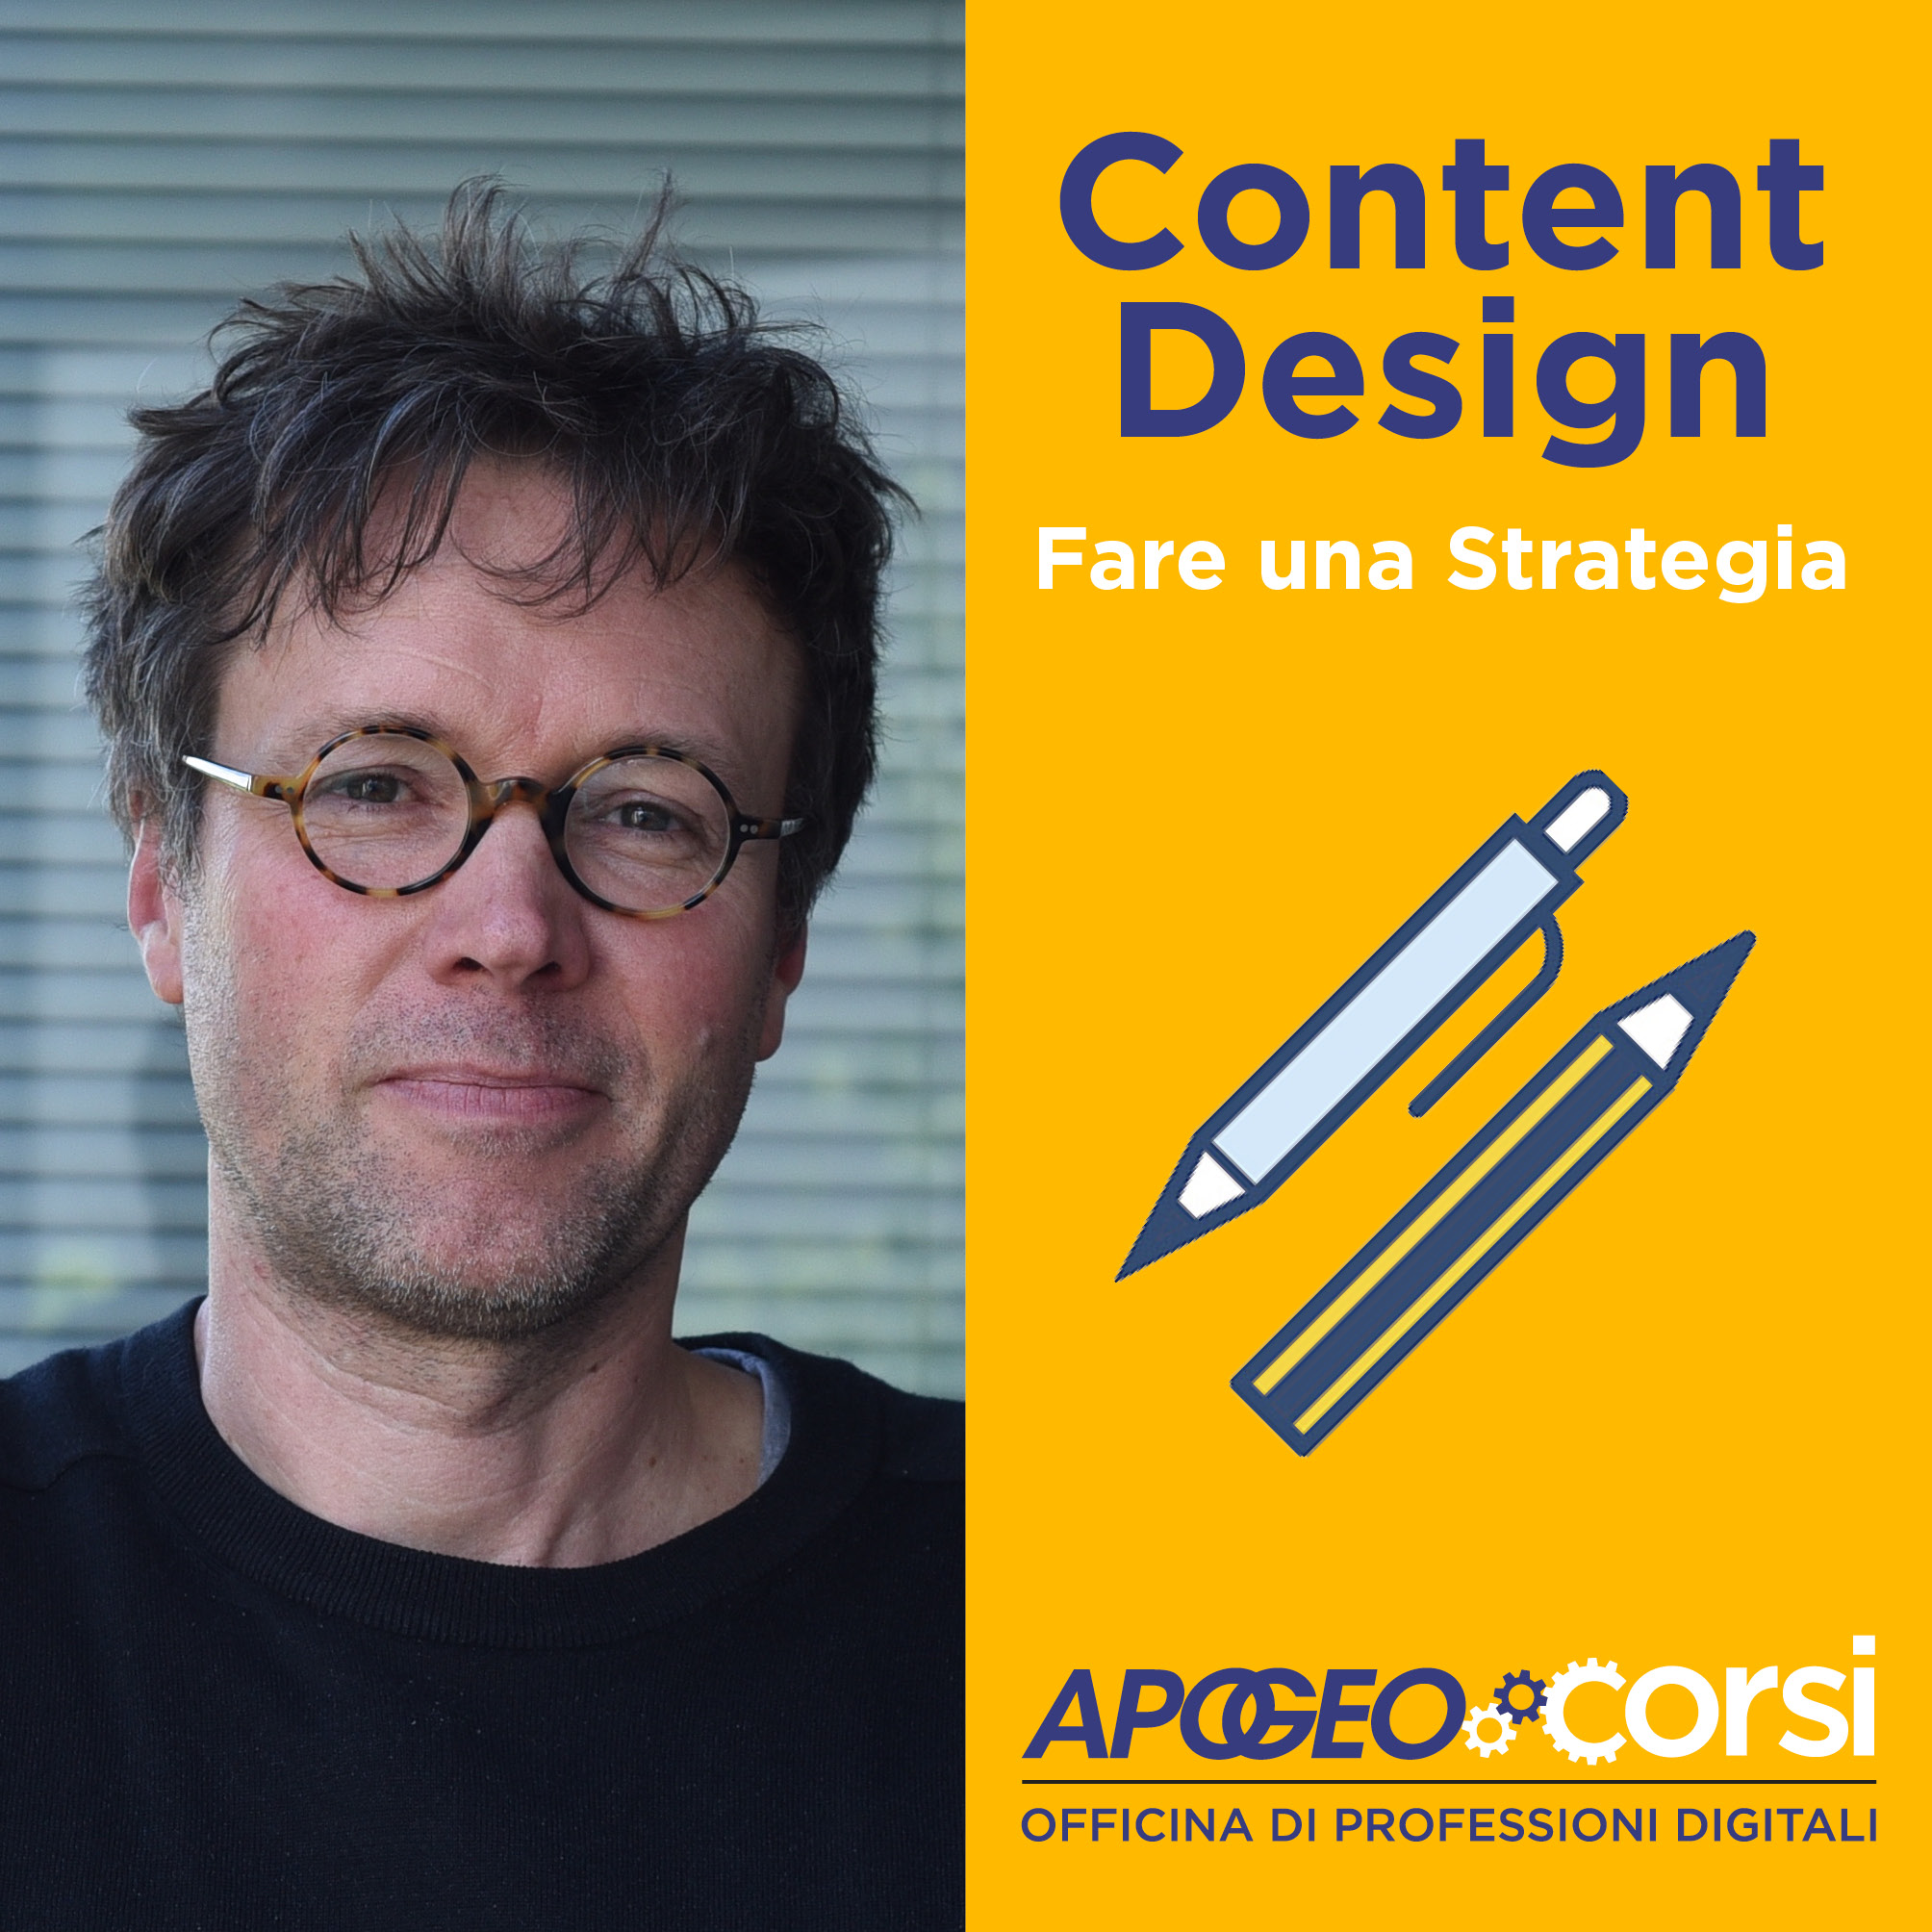 Content-Design-Fare-una Strategia-banner3